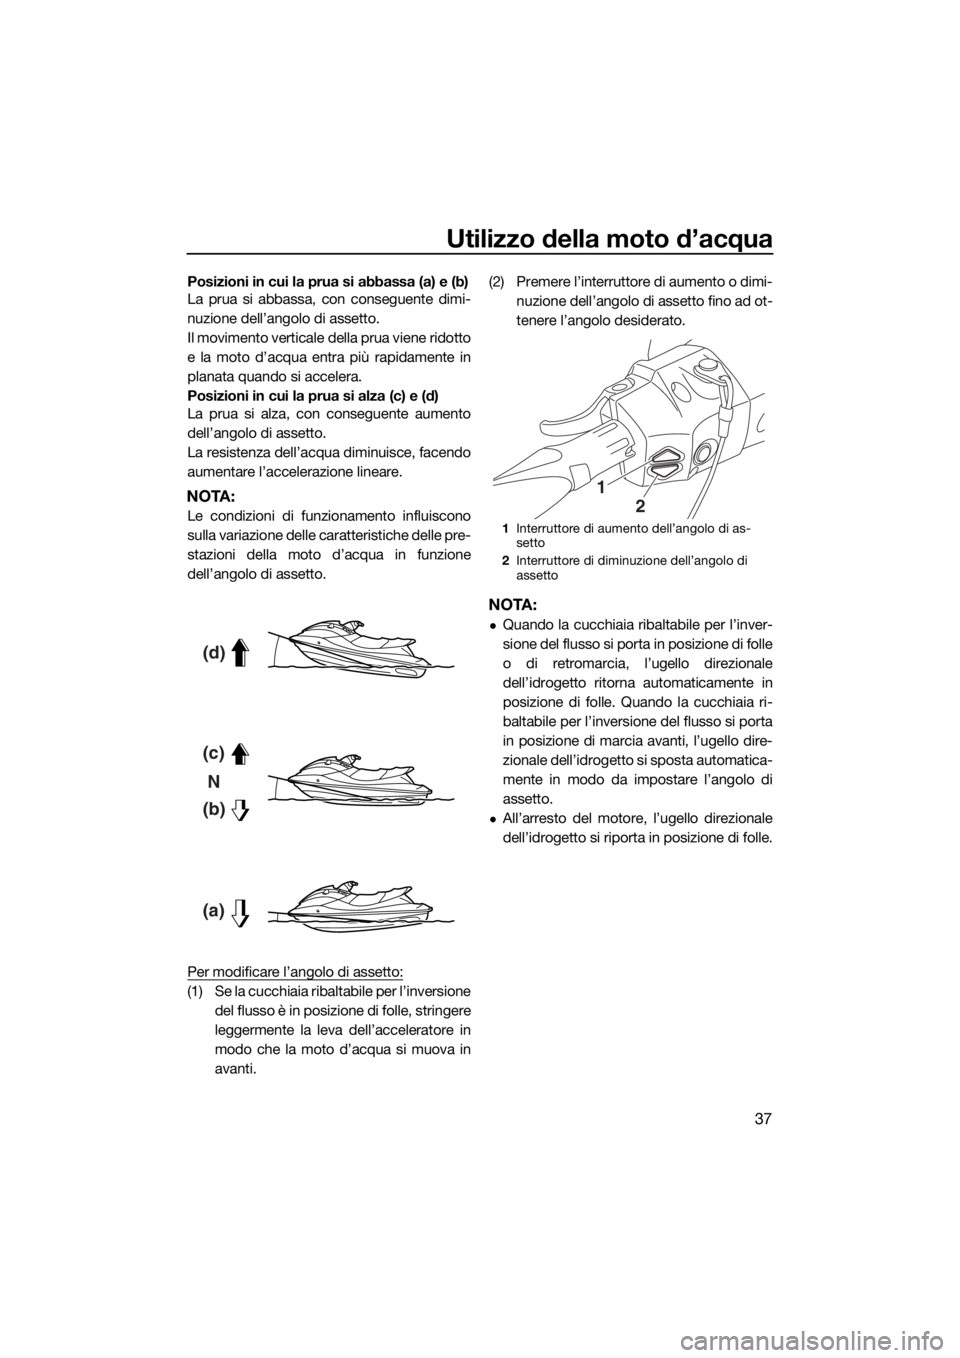 YAMAHA FX HO CRUISER 2018  Manuale duso (in Italian) Utilizzo della moto d’acqua
37
Posizioni in cui la prua si abbassa (a) e (b)
La prua si abbassa, con conseguente dimi-
nuzione dell’angolo di assetto.
Il movimento verticale della prua viene ridot